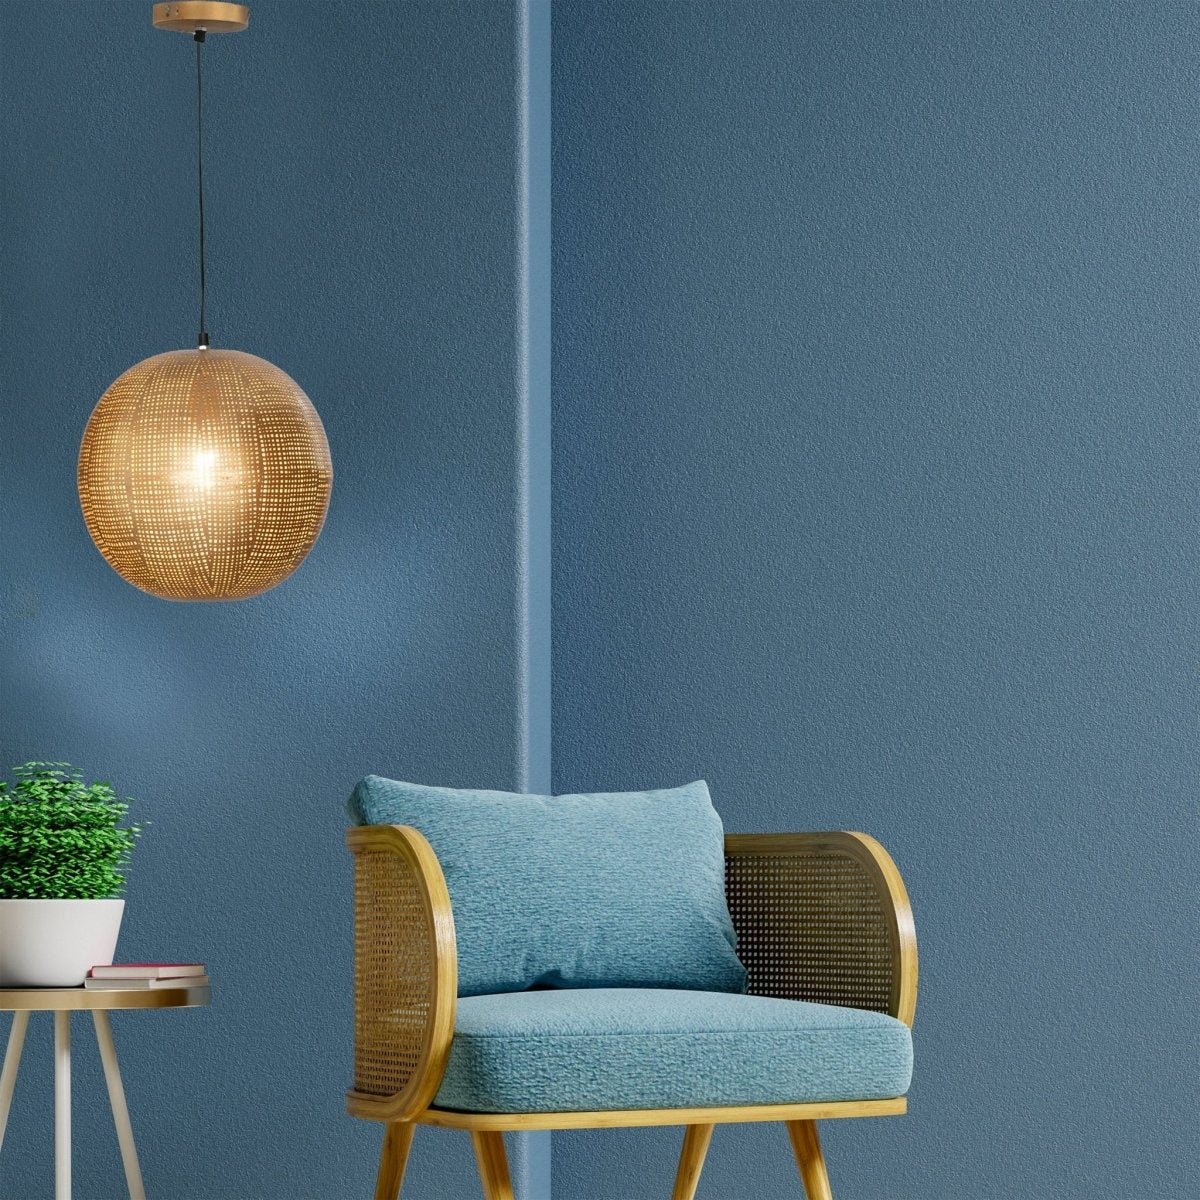 Kezevel Metal Decor Hanging Light - Golden Finish Hand Carved Pendant Light / Lamp for Living Room, Bedroom, Balcon, Foyer